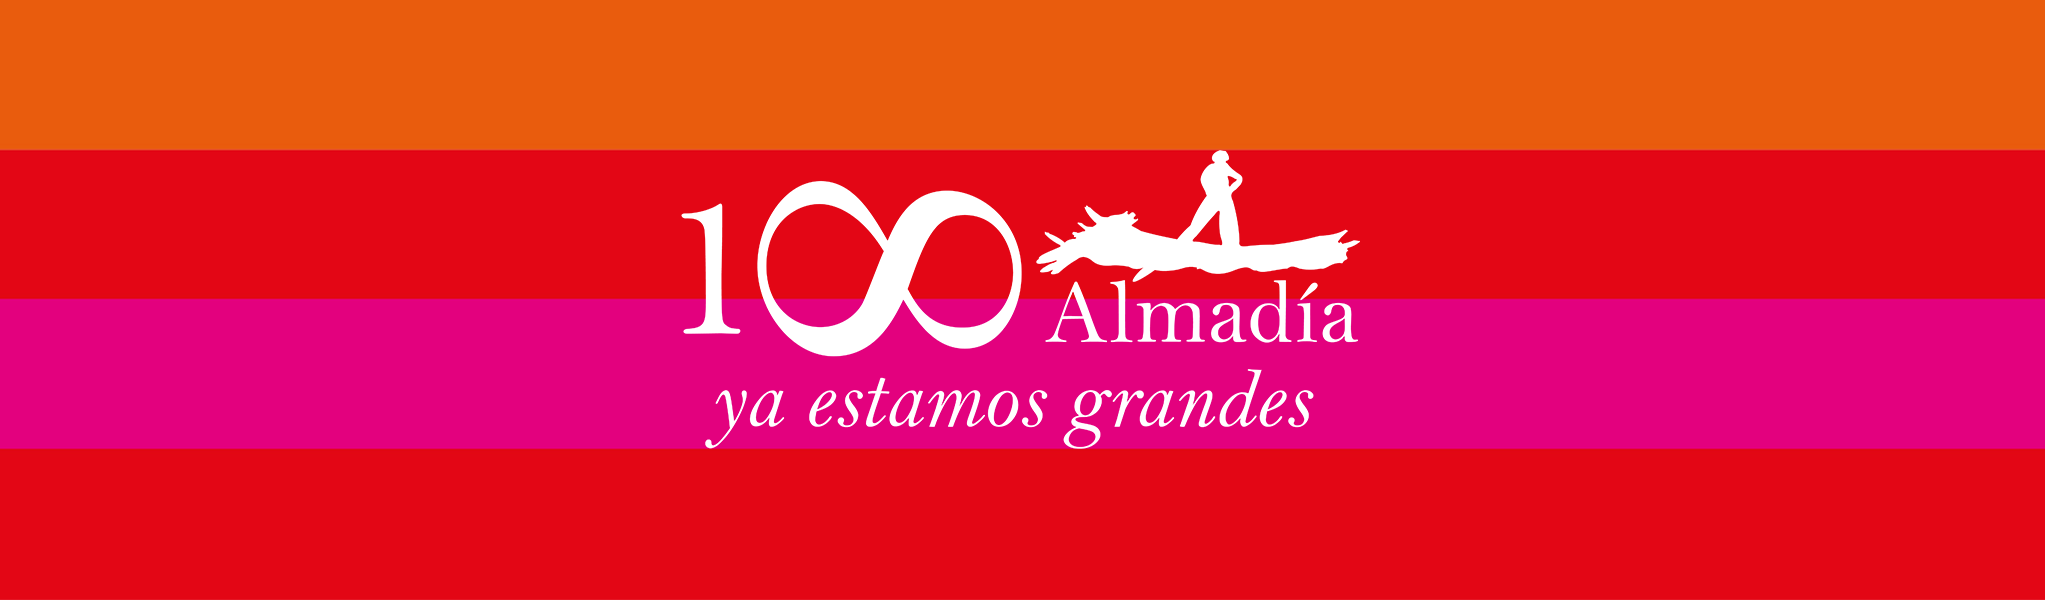 Editorial Almadia